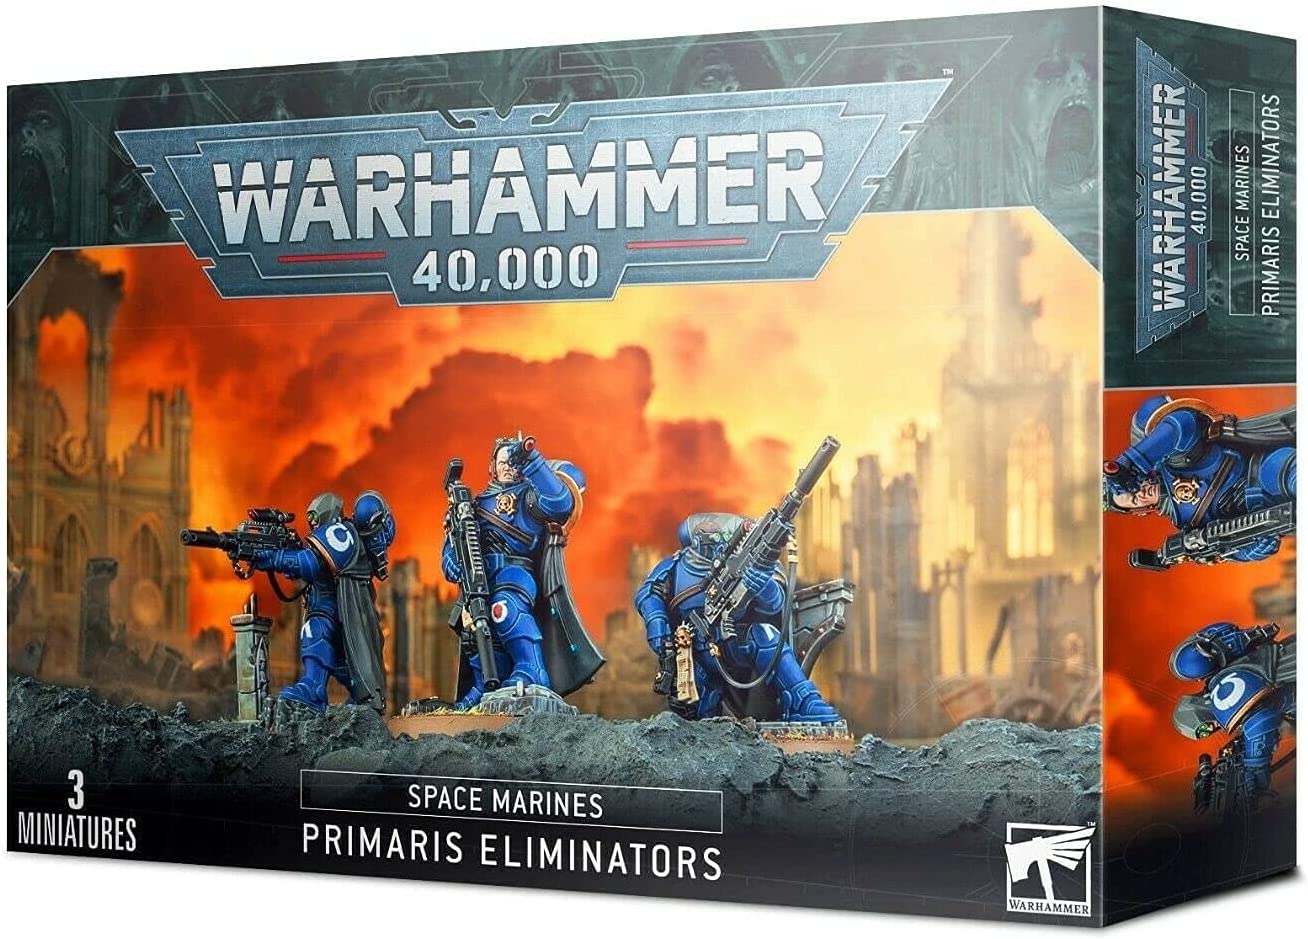 warhammer 40k 40,000 space marines primaris eliminators | Yard's Games Ltd